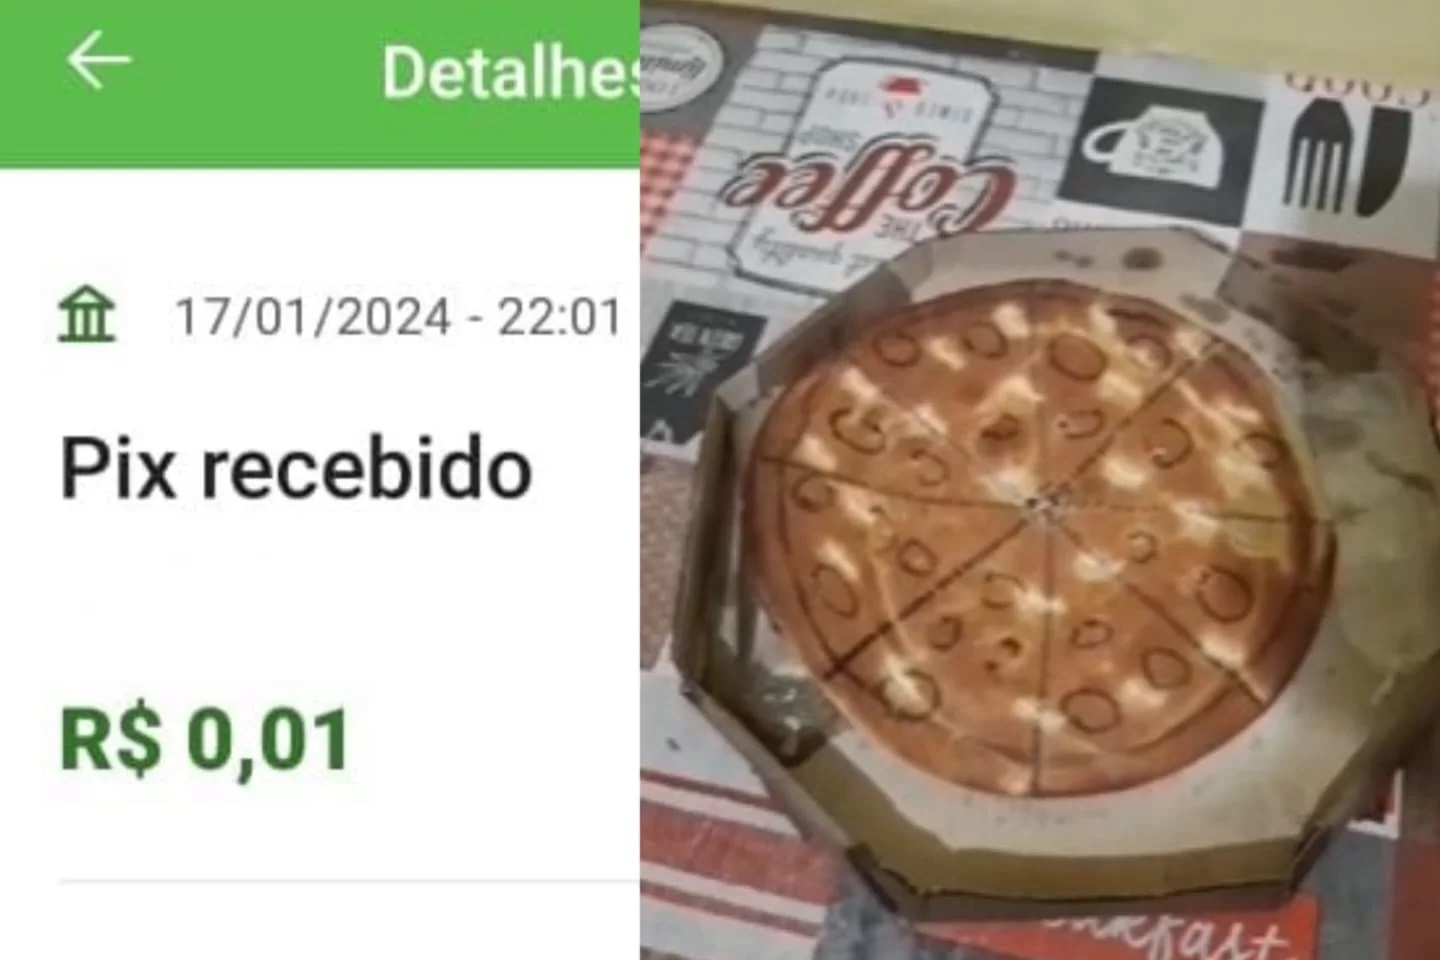 Cliente manda Pix de R$ 0,01 e comerciante responde com pizza fake